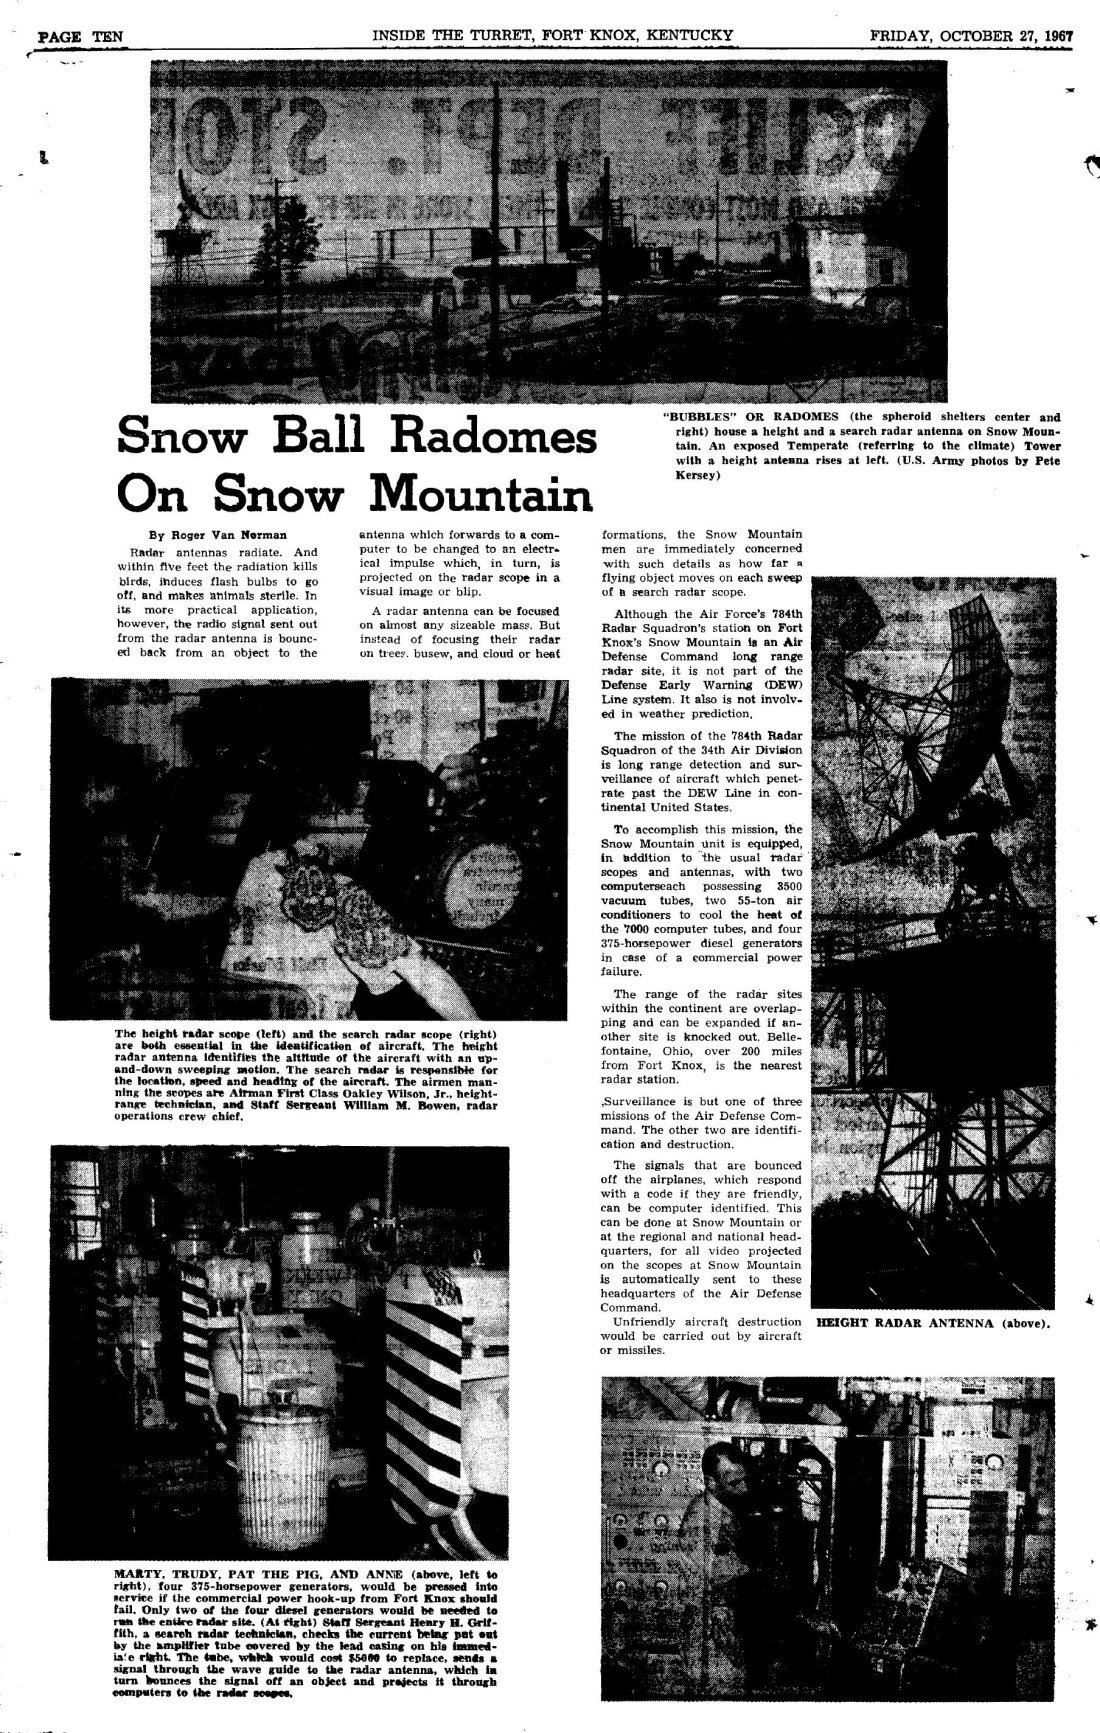 SnowMountain1967Turret.jpg